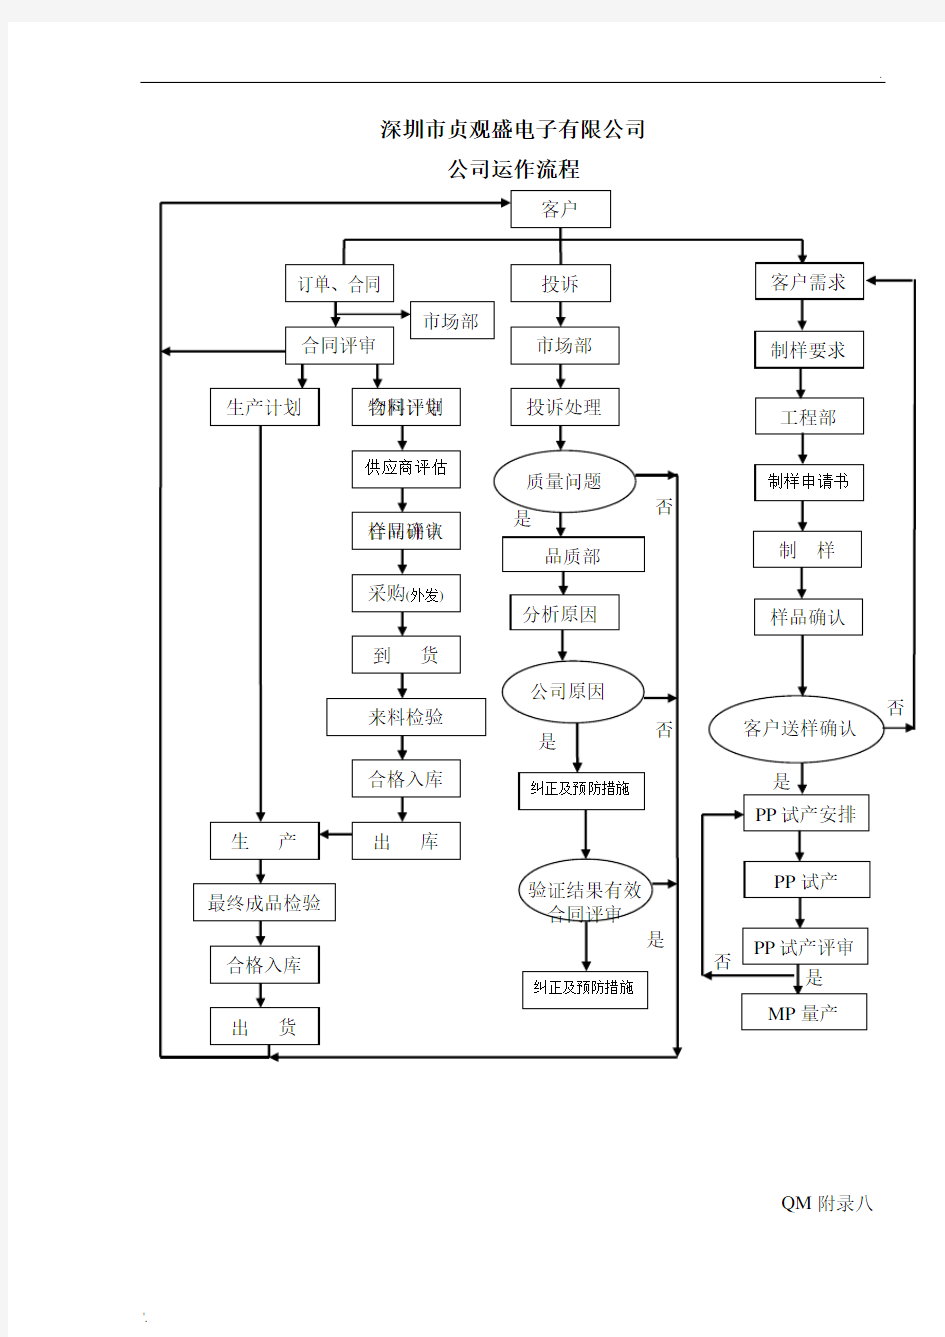 公司组织结构图(运作流程图)